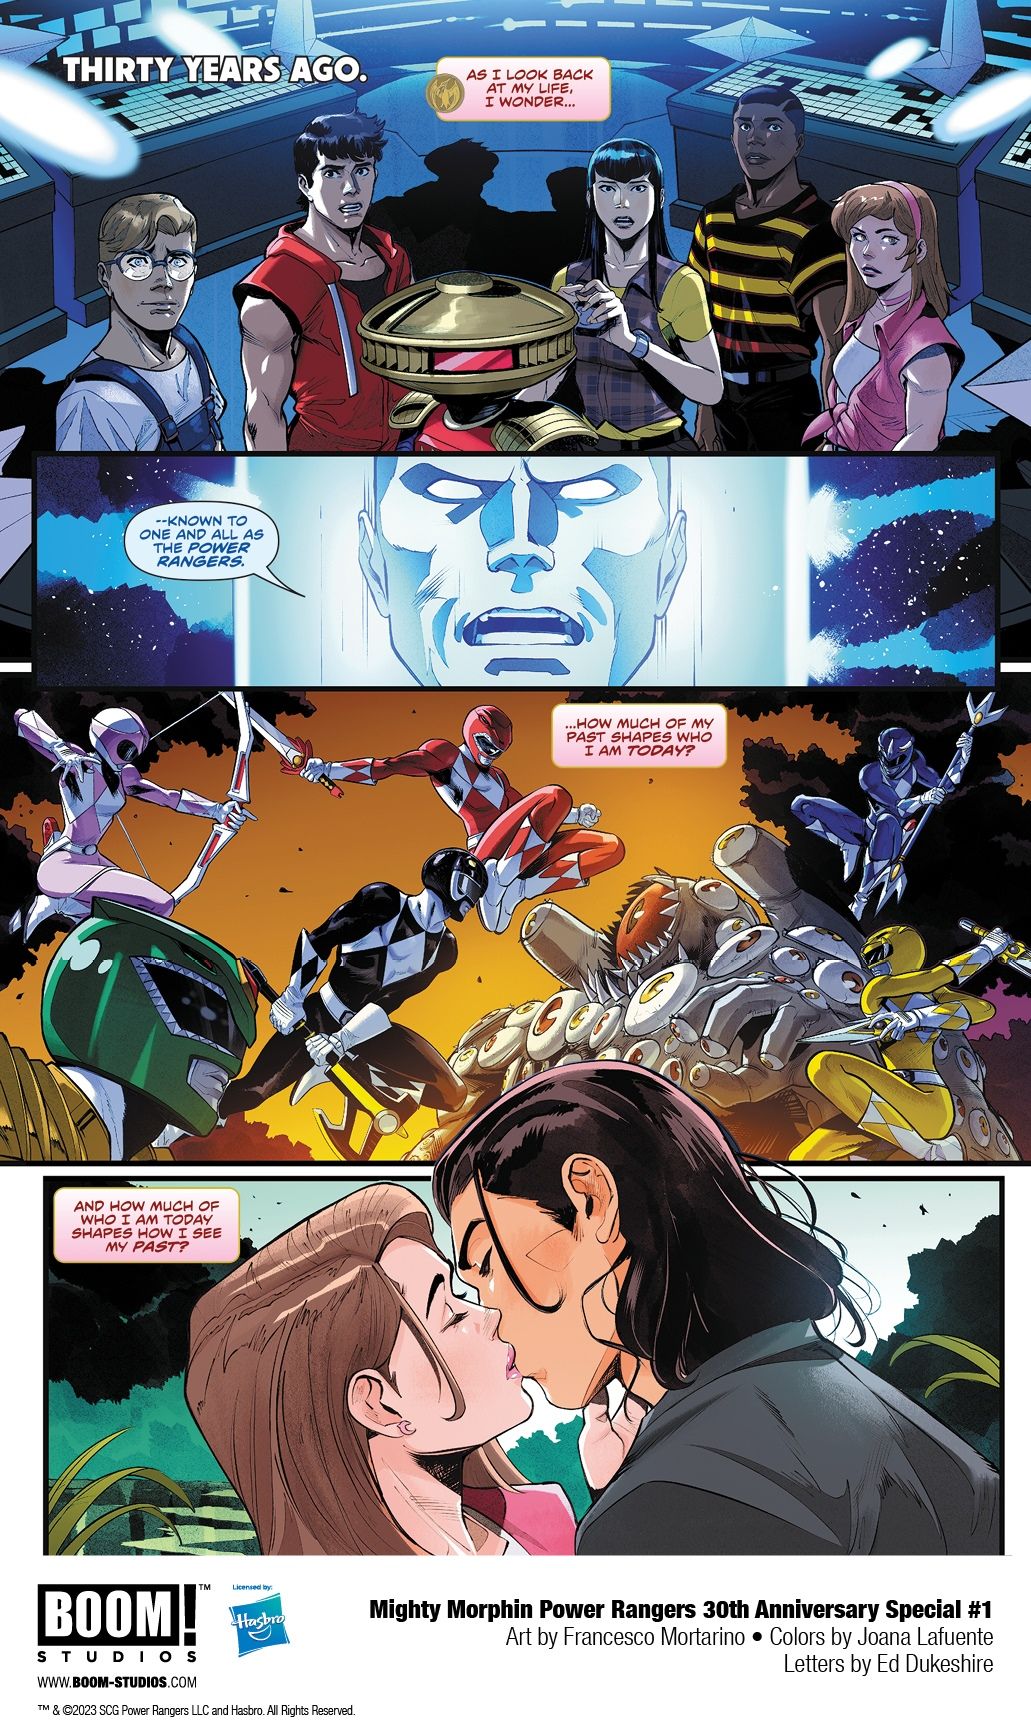 Avance del cómic del 30 aniversario de Mighty Morphin Power Rangers 5-1